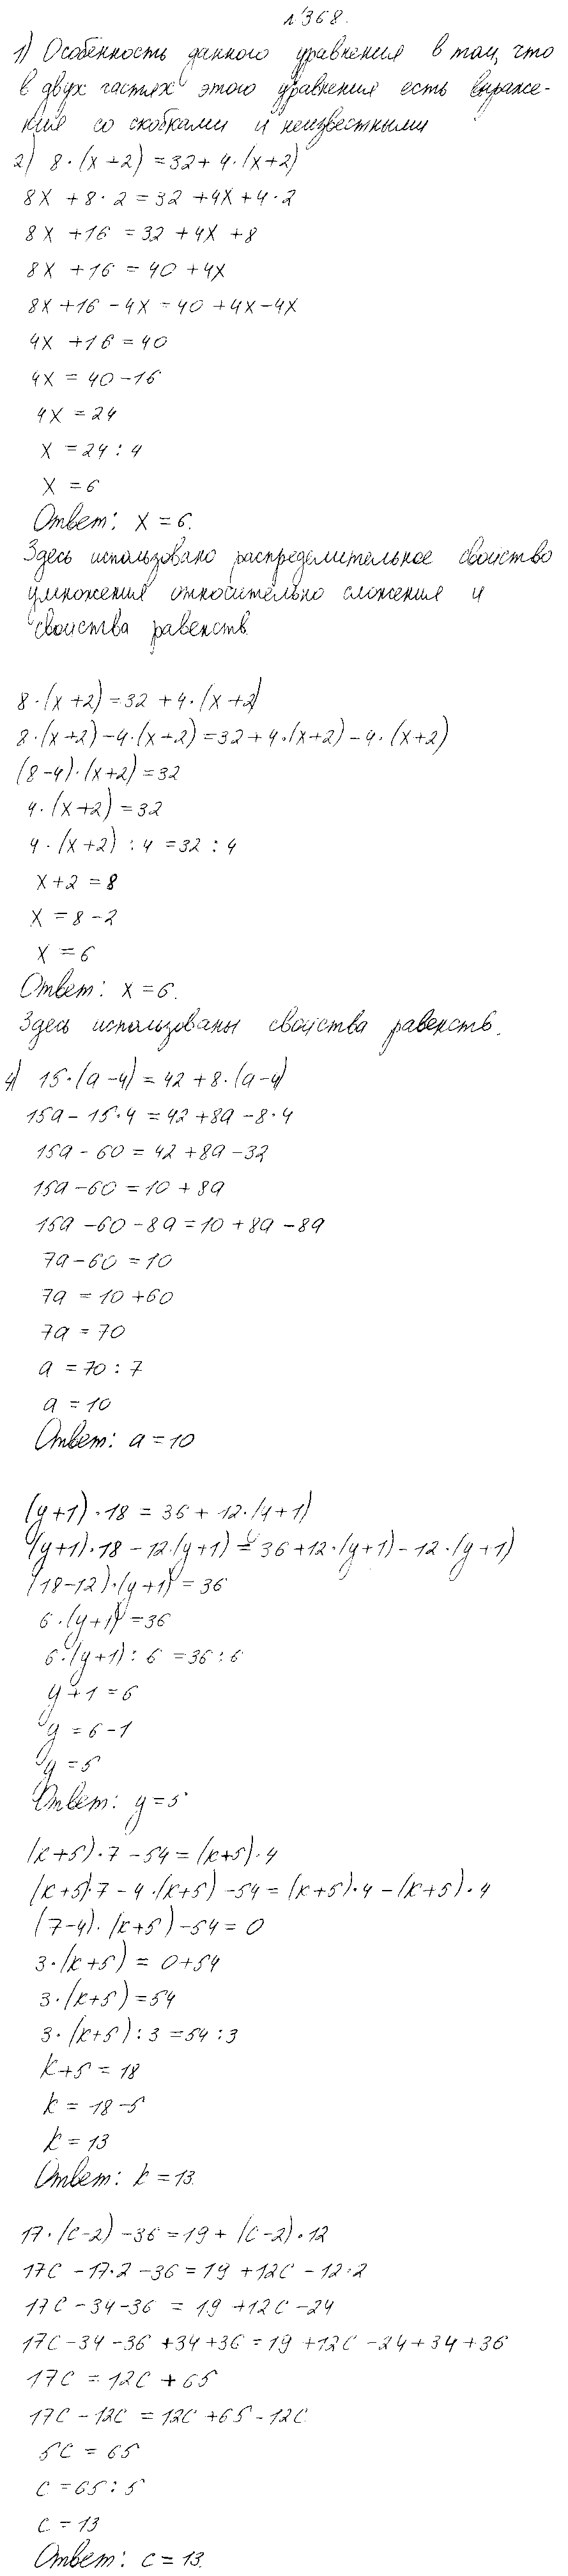 ГДЗ Математика 4 класс - 368